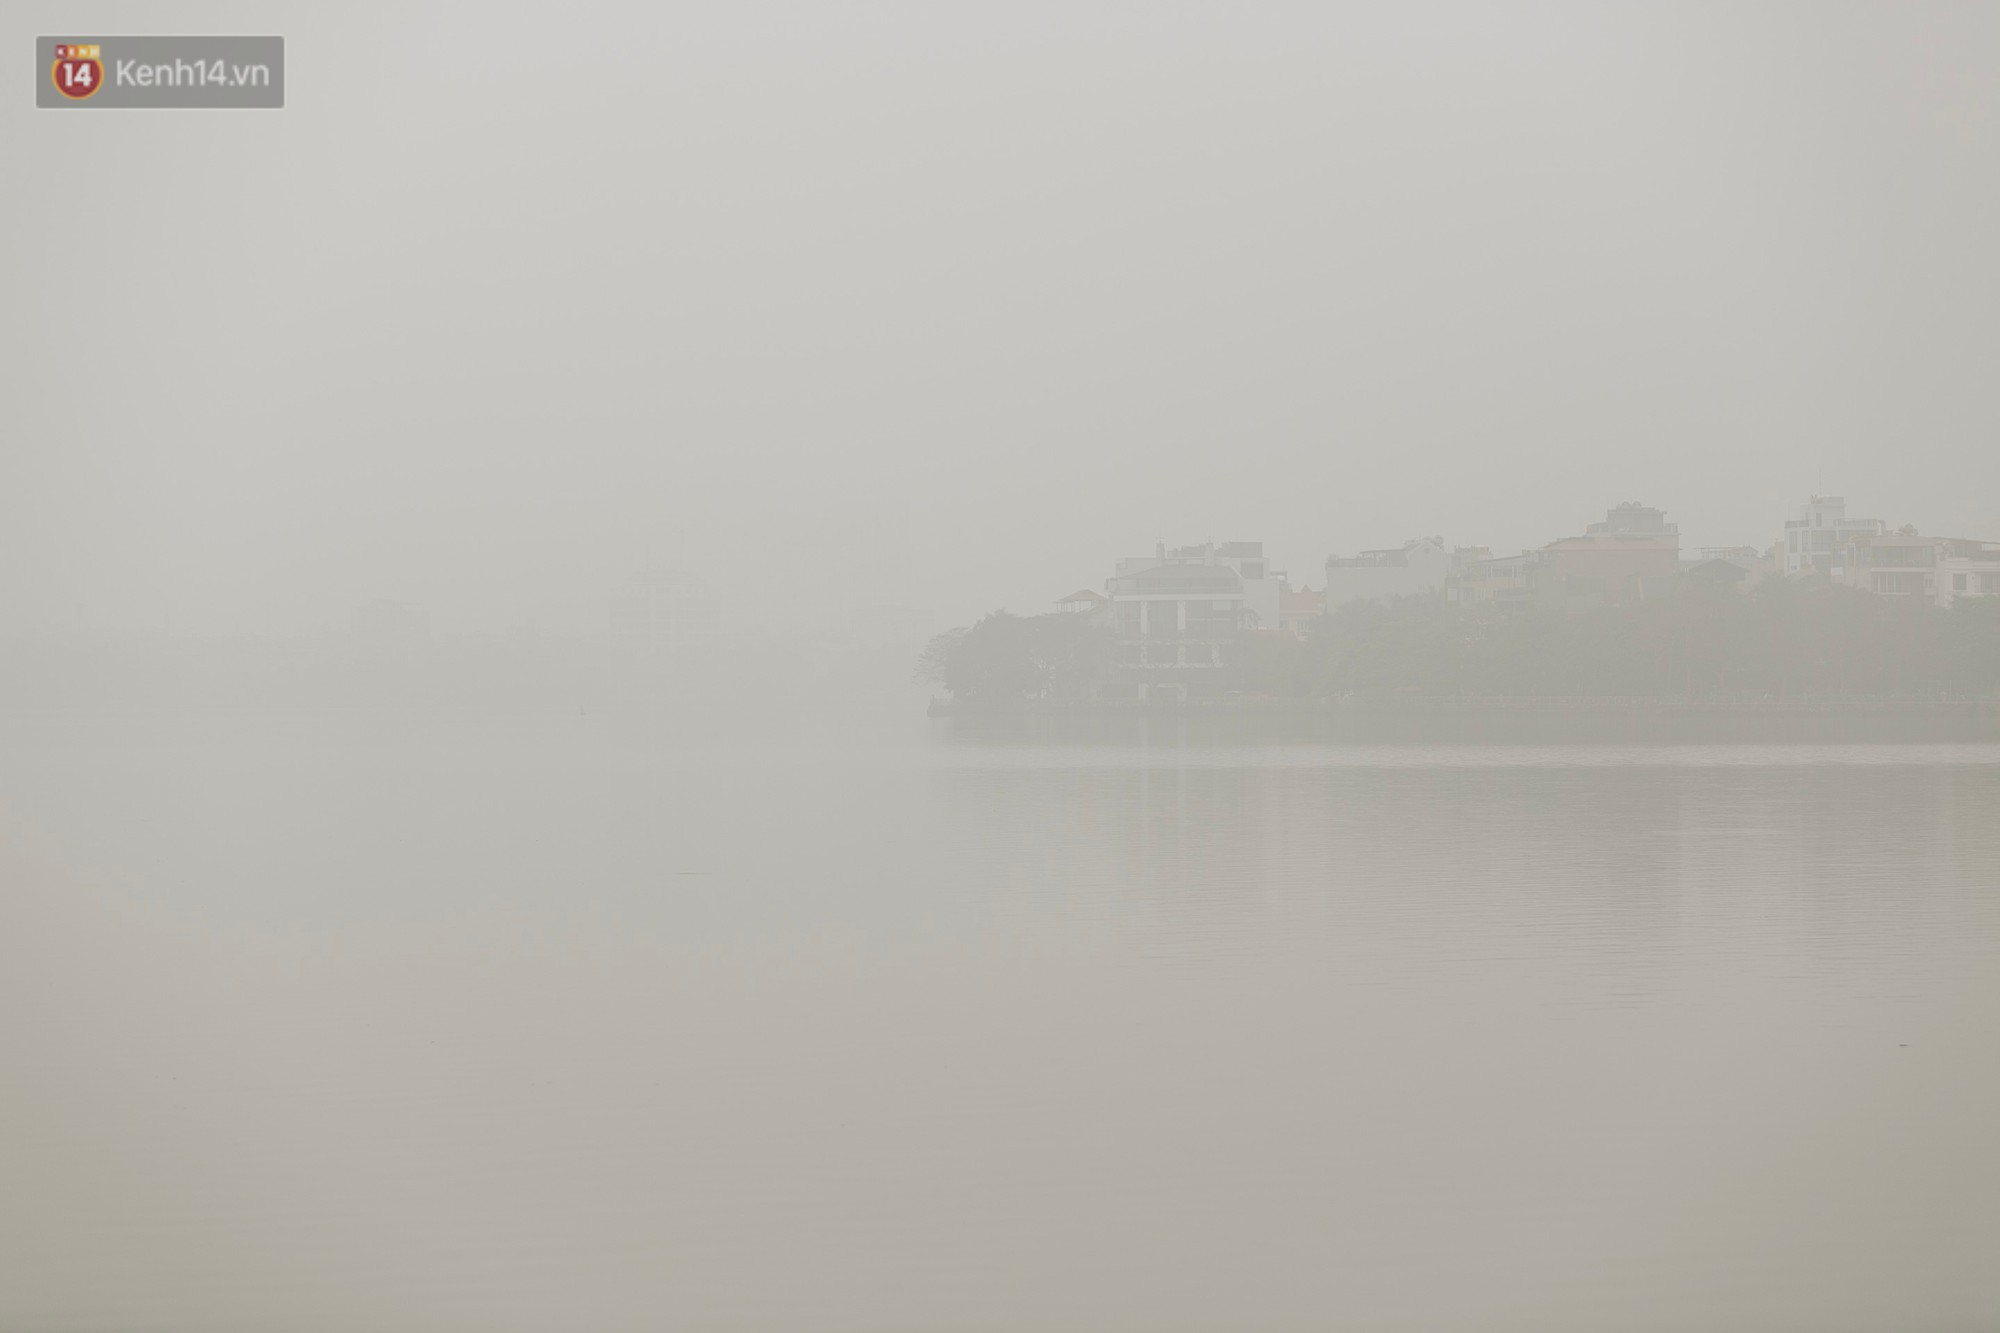 Hà Nội ngập trong sương bụi mù mịt bao phủ tầm nhìn: Tình trạng ô nhiễm không khí đáng báo động! - Ảnh 17.